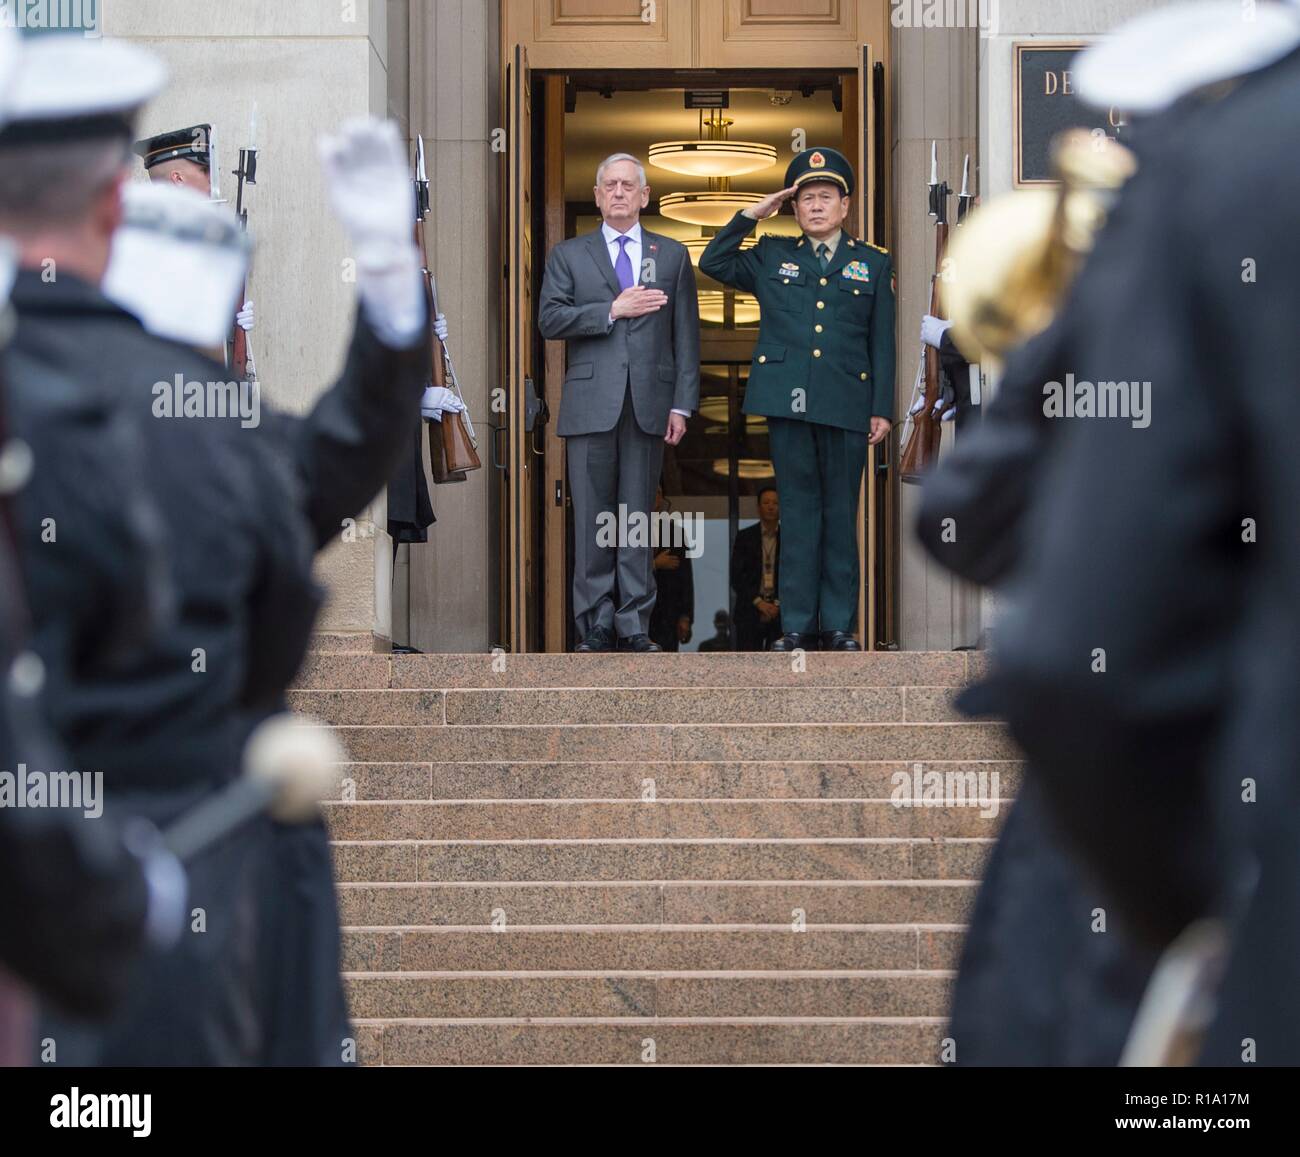 El Secretario de Defensa de EE.UU. James Mattis, izquierda, y el Ministro de Defensa Nacional de la República Popular de China Wei Fenghe General prestar honores durante la ceremonia de llegada en el Pentágono El 9 de noviembre de 2018, en Arlington, Virginia. Foto de stock